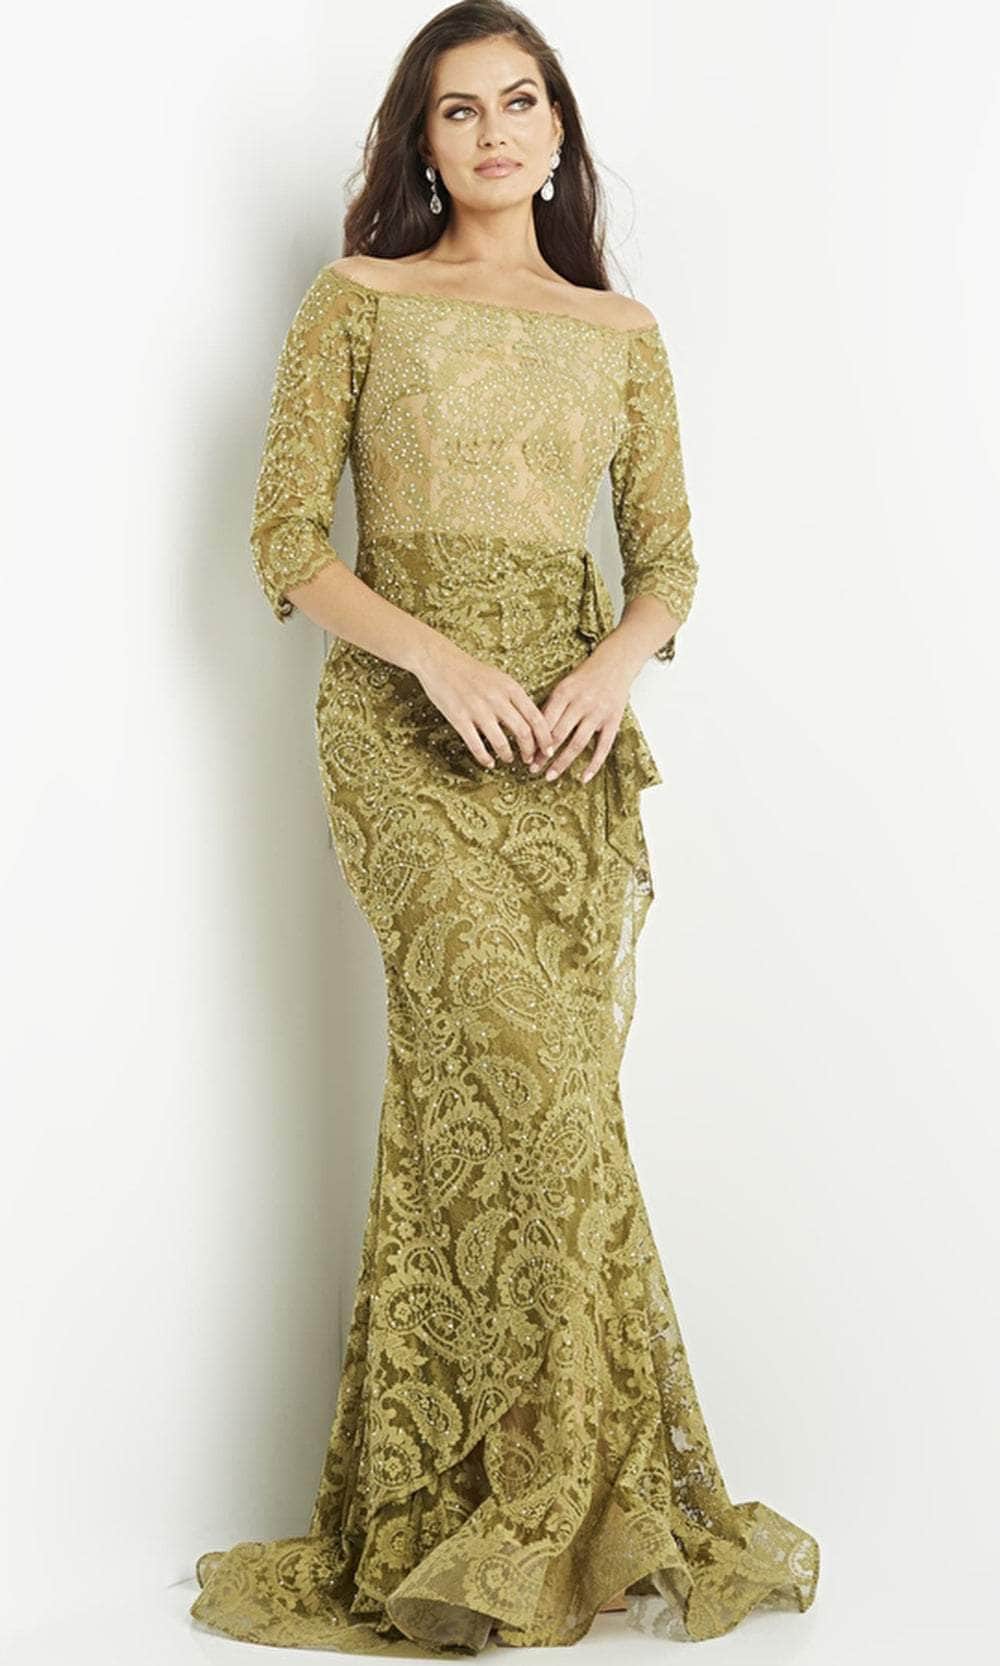 Jovani 23811 - Olive Embellished Lace Evening Gown Mother of the Bride Dresses 00 / Olive